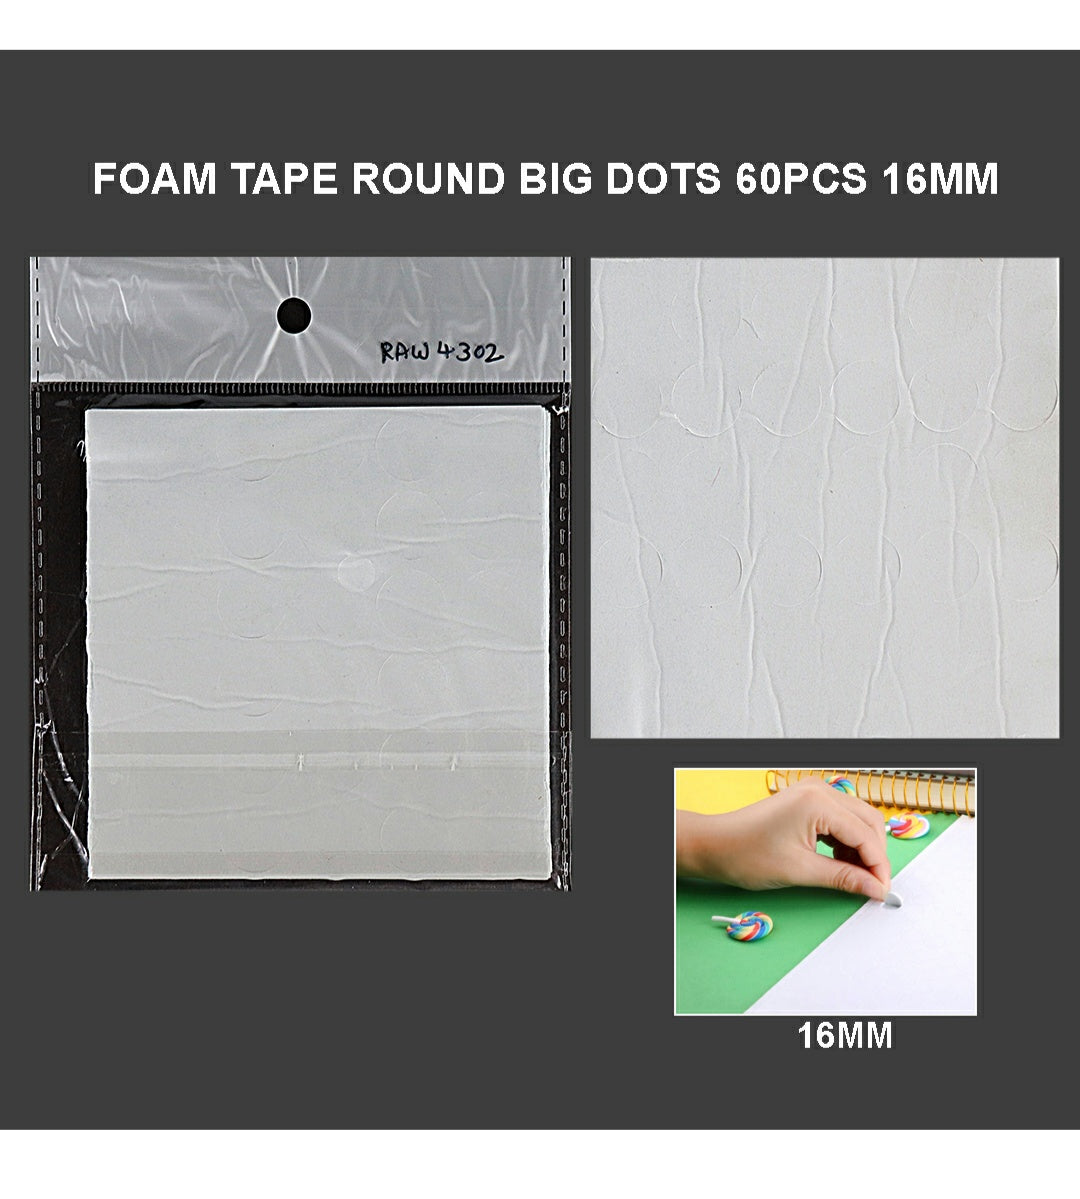 Foam Tape Round Big Dots 16Mm 60Pcs Raw4302 | INKARTO